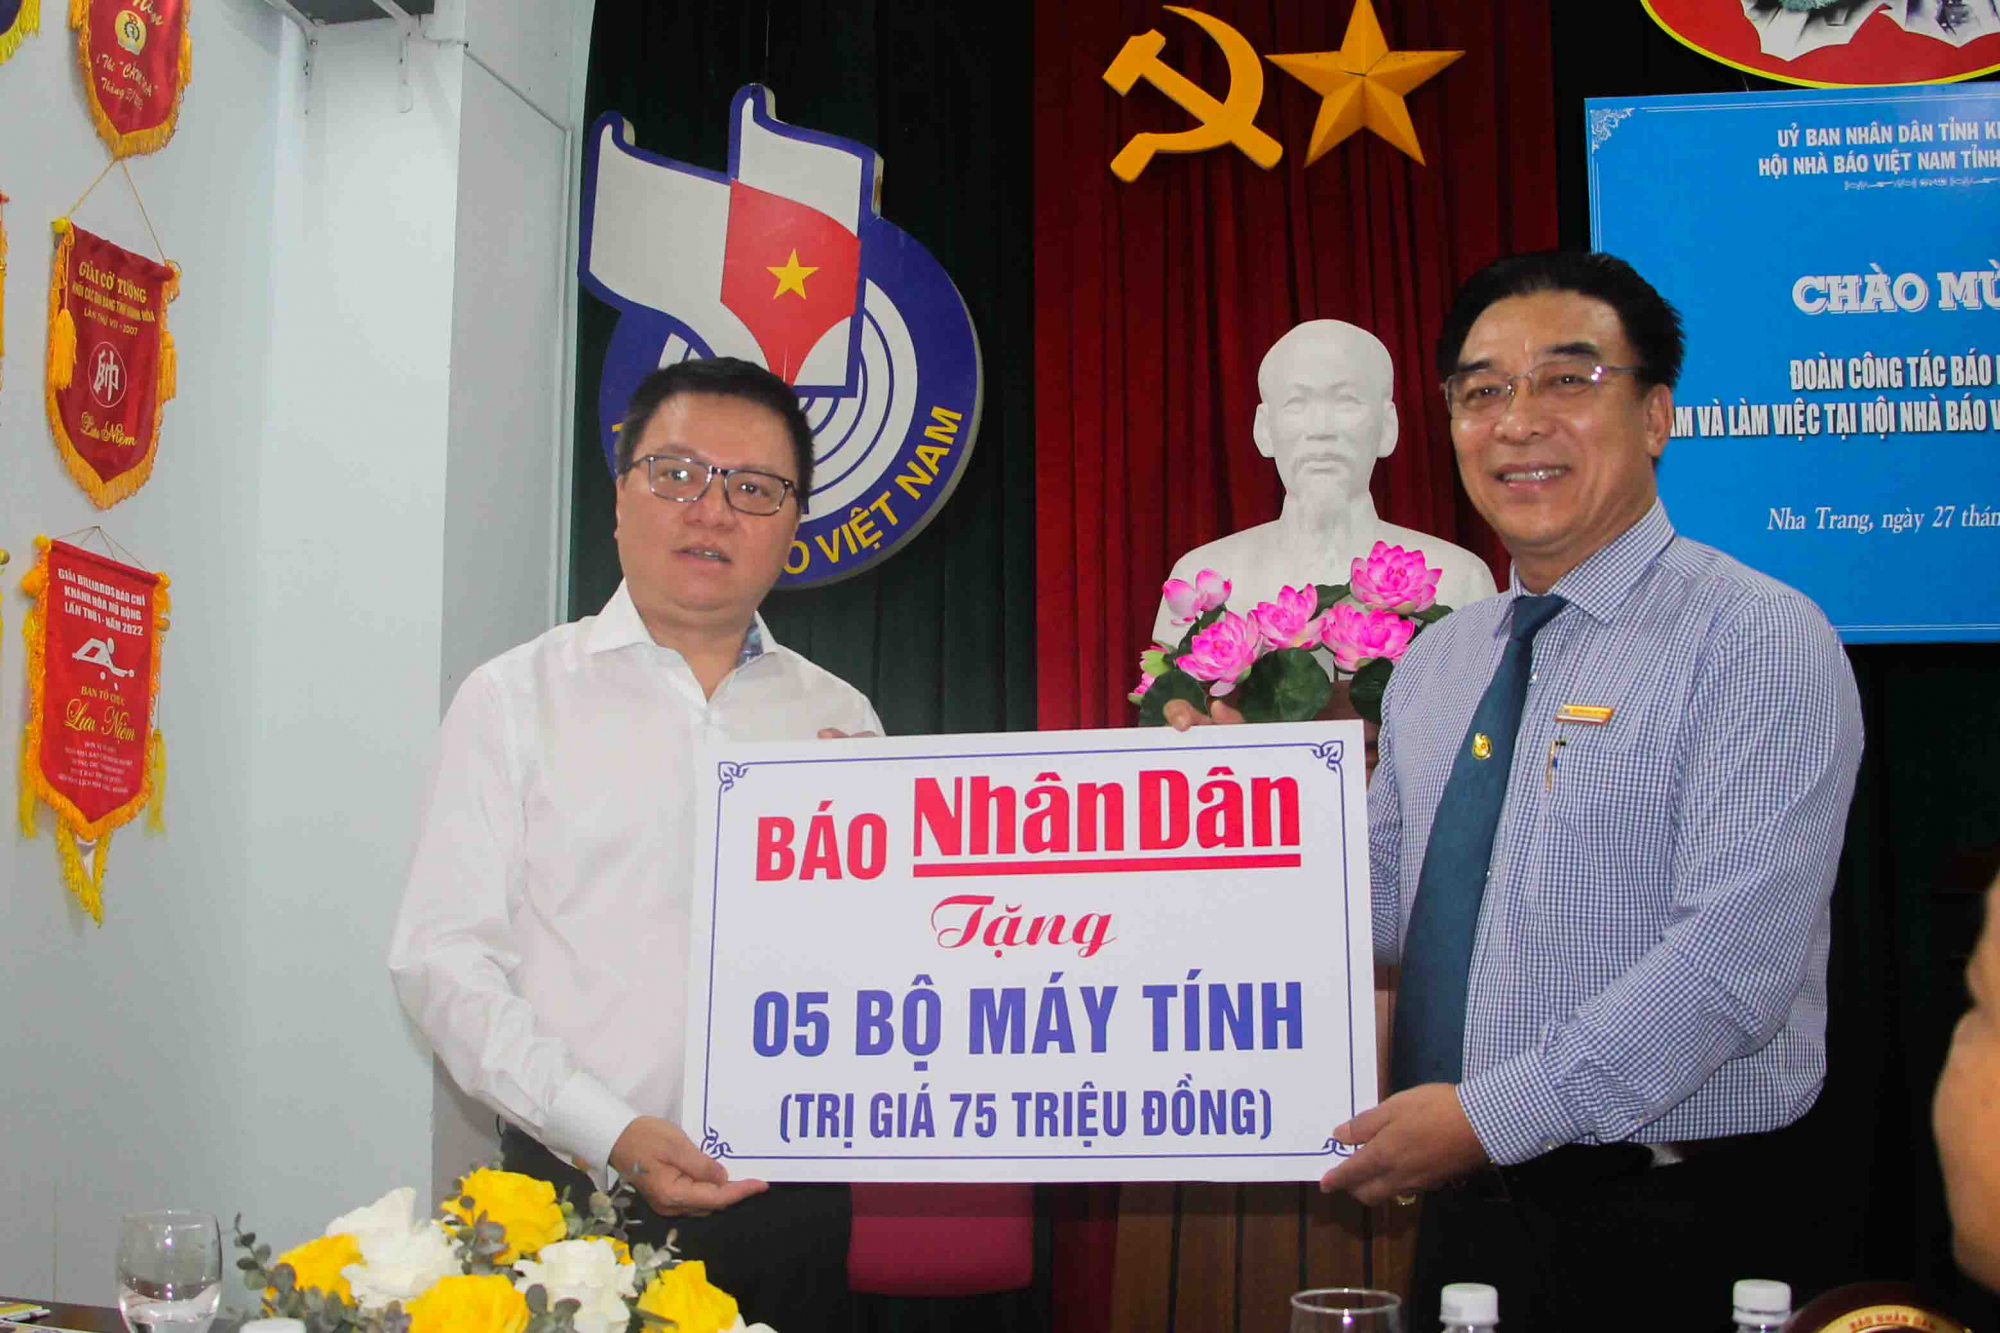 Đồng chí Lê Quốc Minh trao bảng tượng trưng tặng máy vi tính tới đại diện Hội Nhà báo tỉnh Khánh Hòa. Ảnh: Xuân Thành